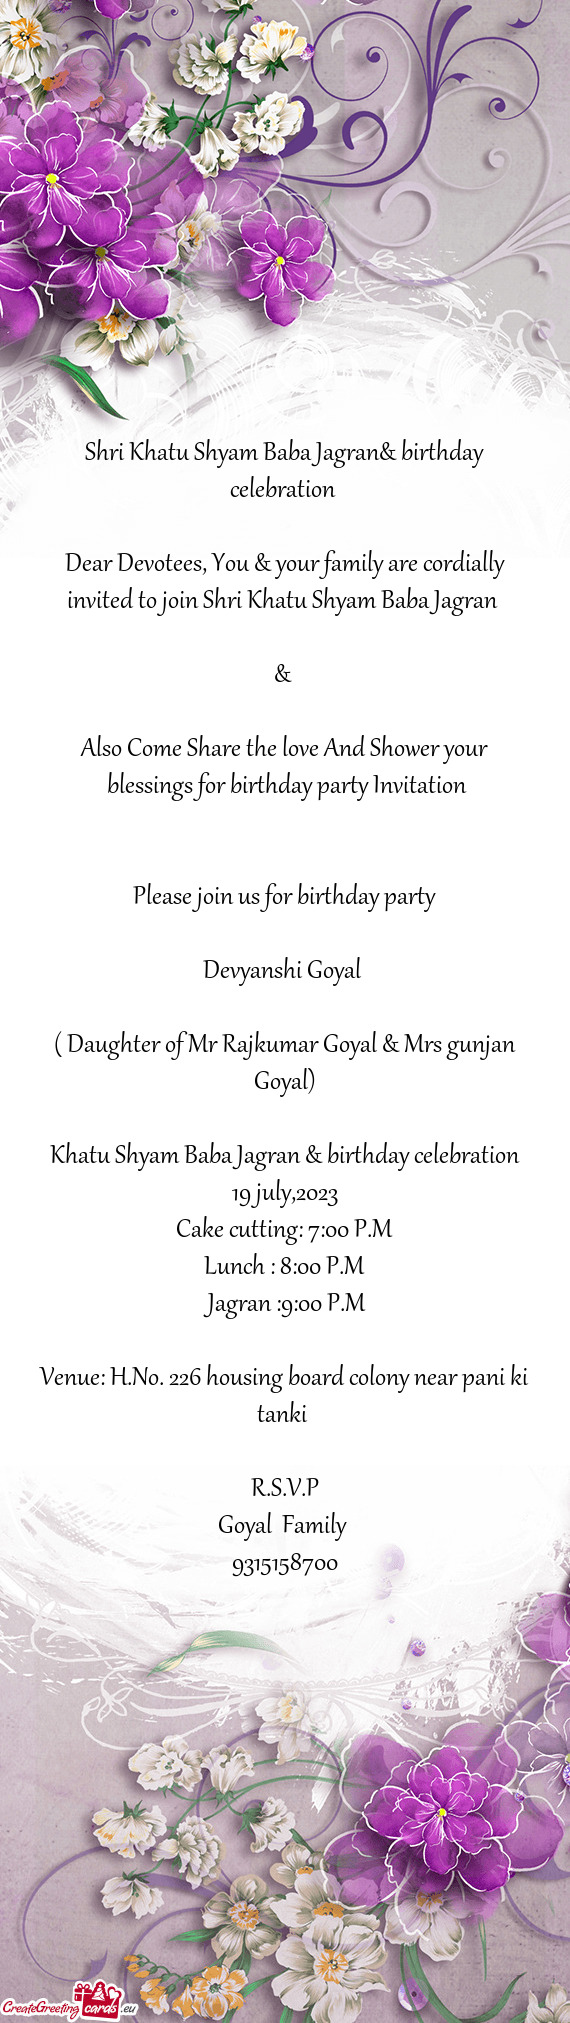 Shri Khatu Shyam Baba Jagran& birthday celebration